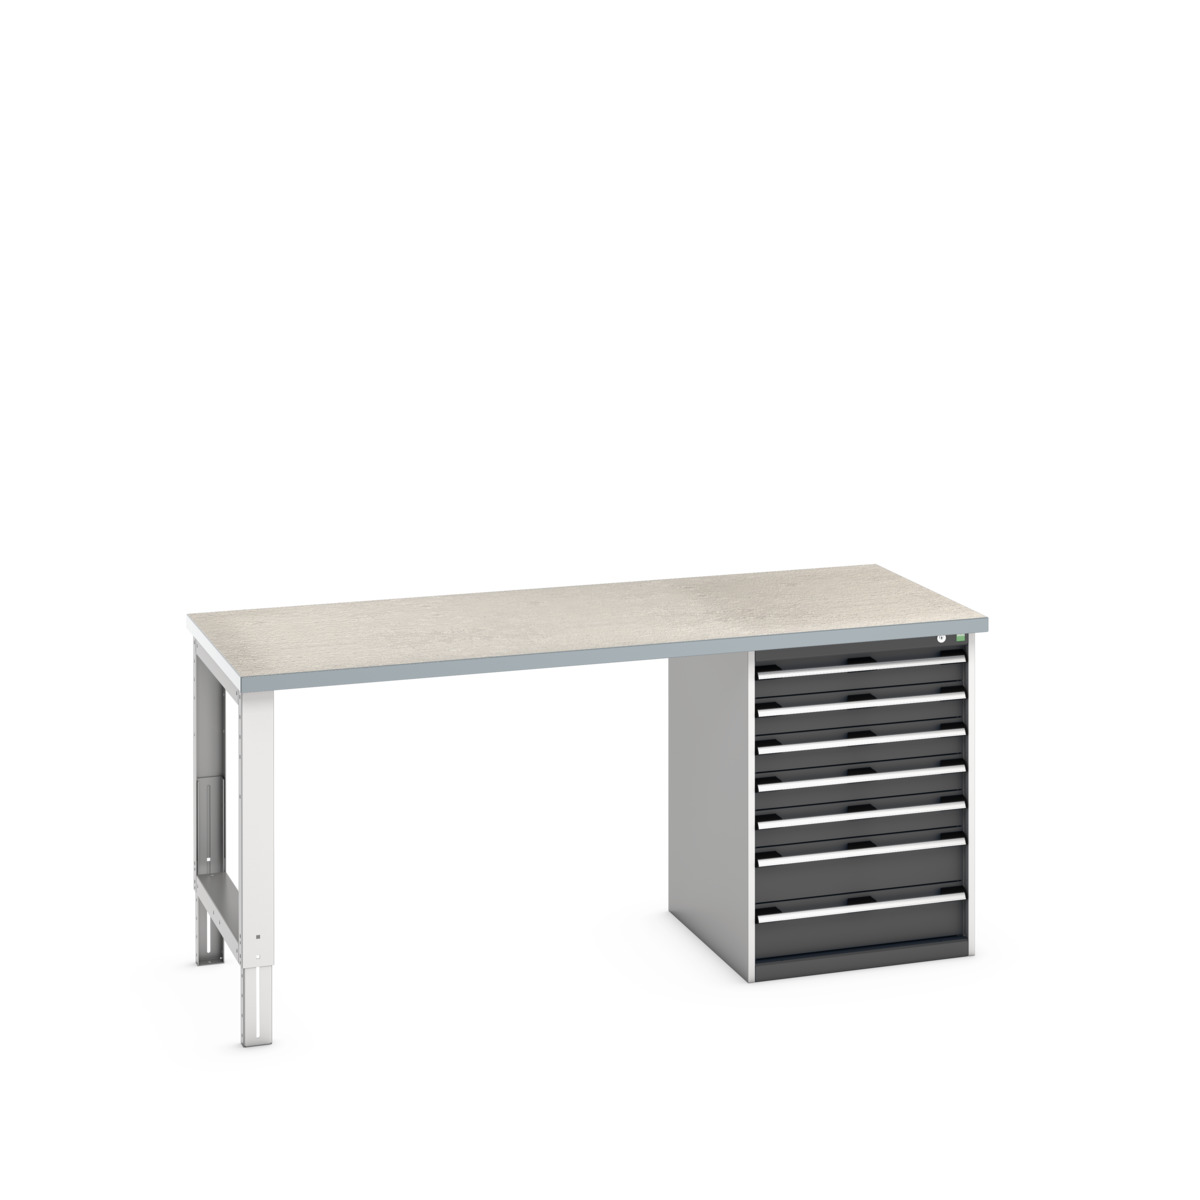 41004124.19V - cubio pedestal bench (lino)